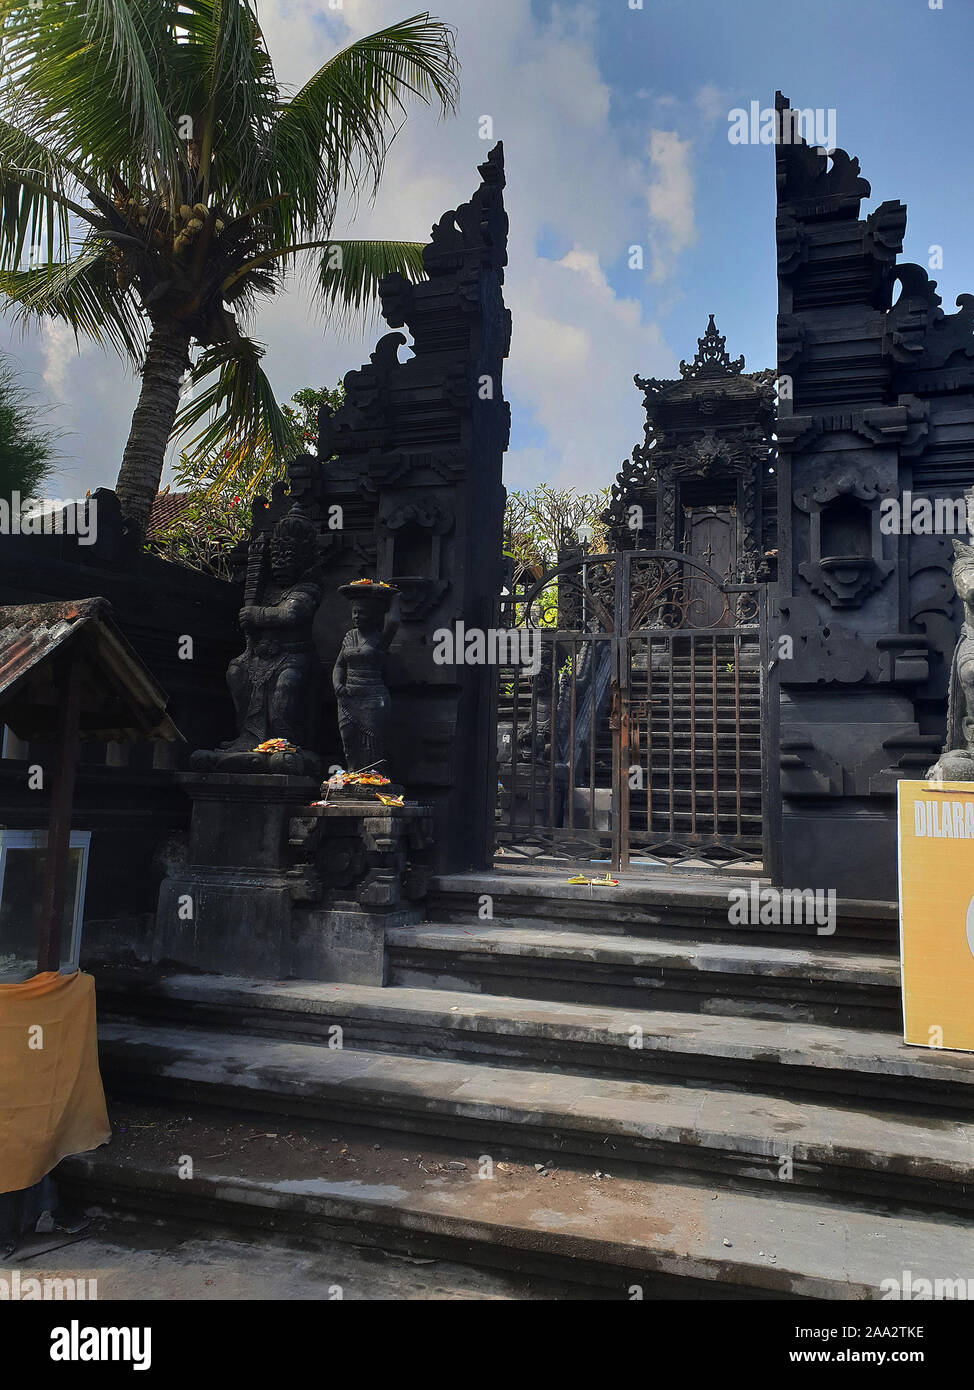 Tempio vicino al Tempio di mare Tanah Lot, Bali, Indonesia Foto Stock